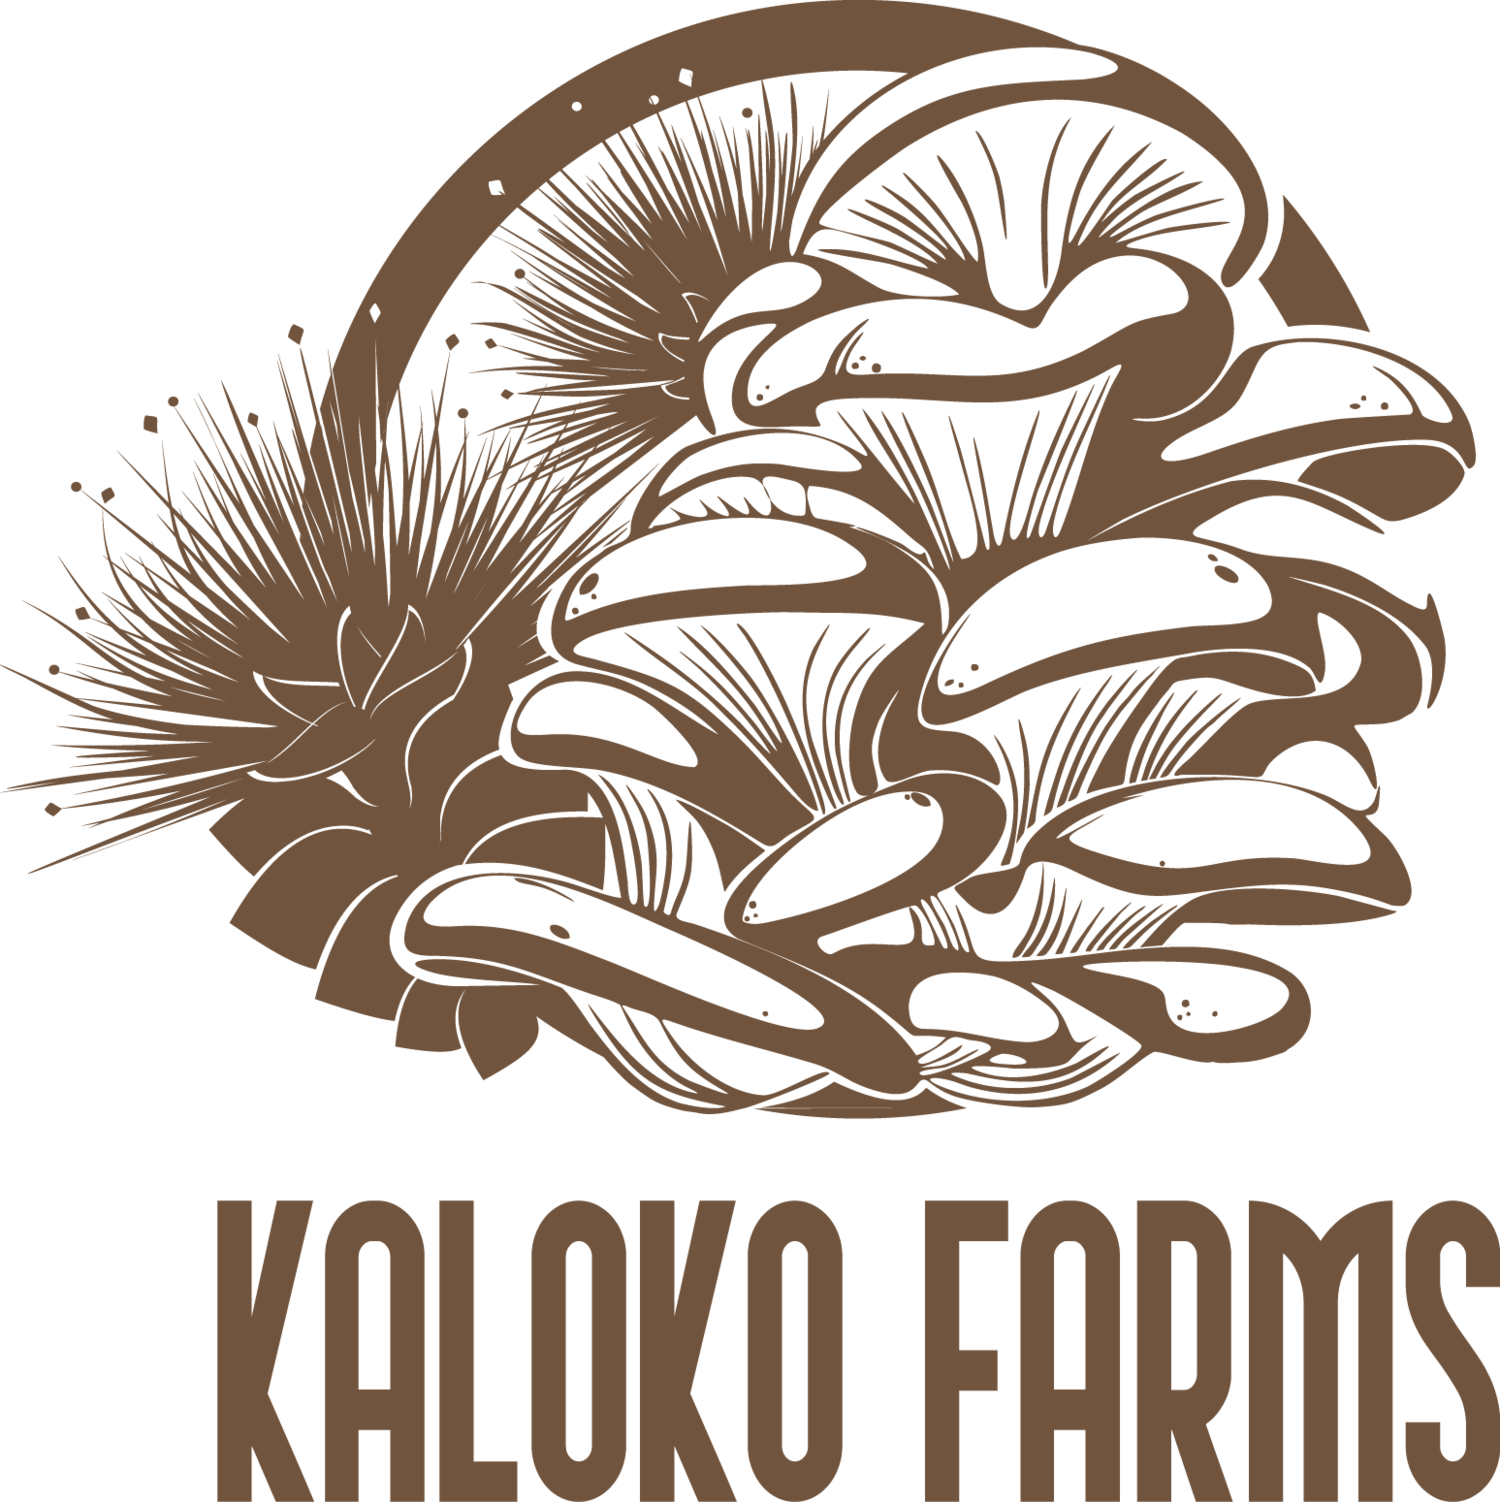 Kaloko Farms